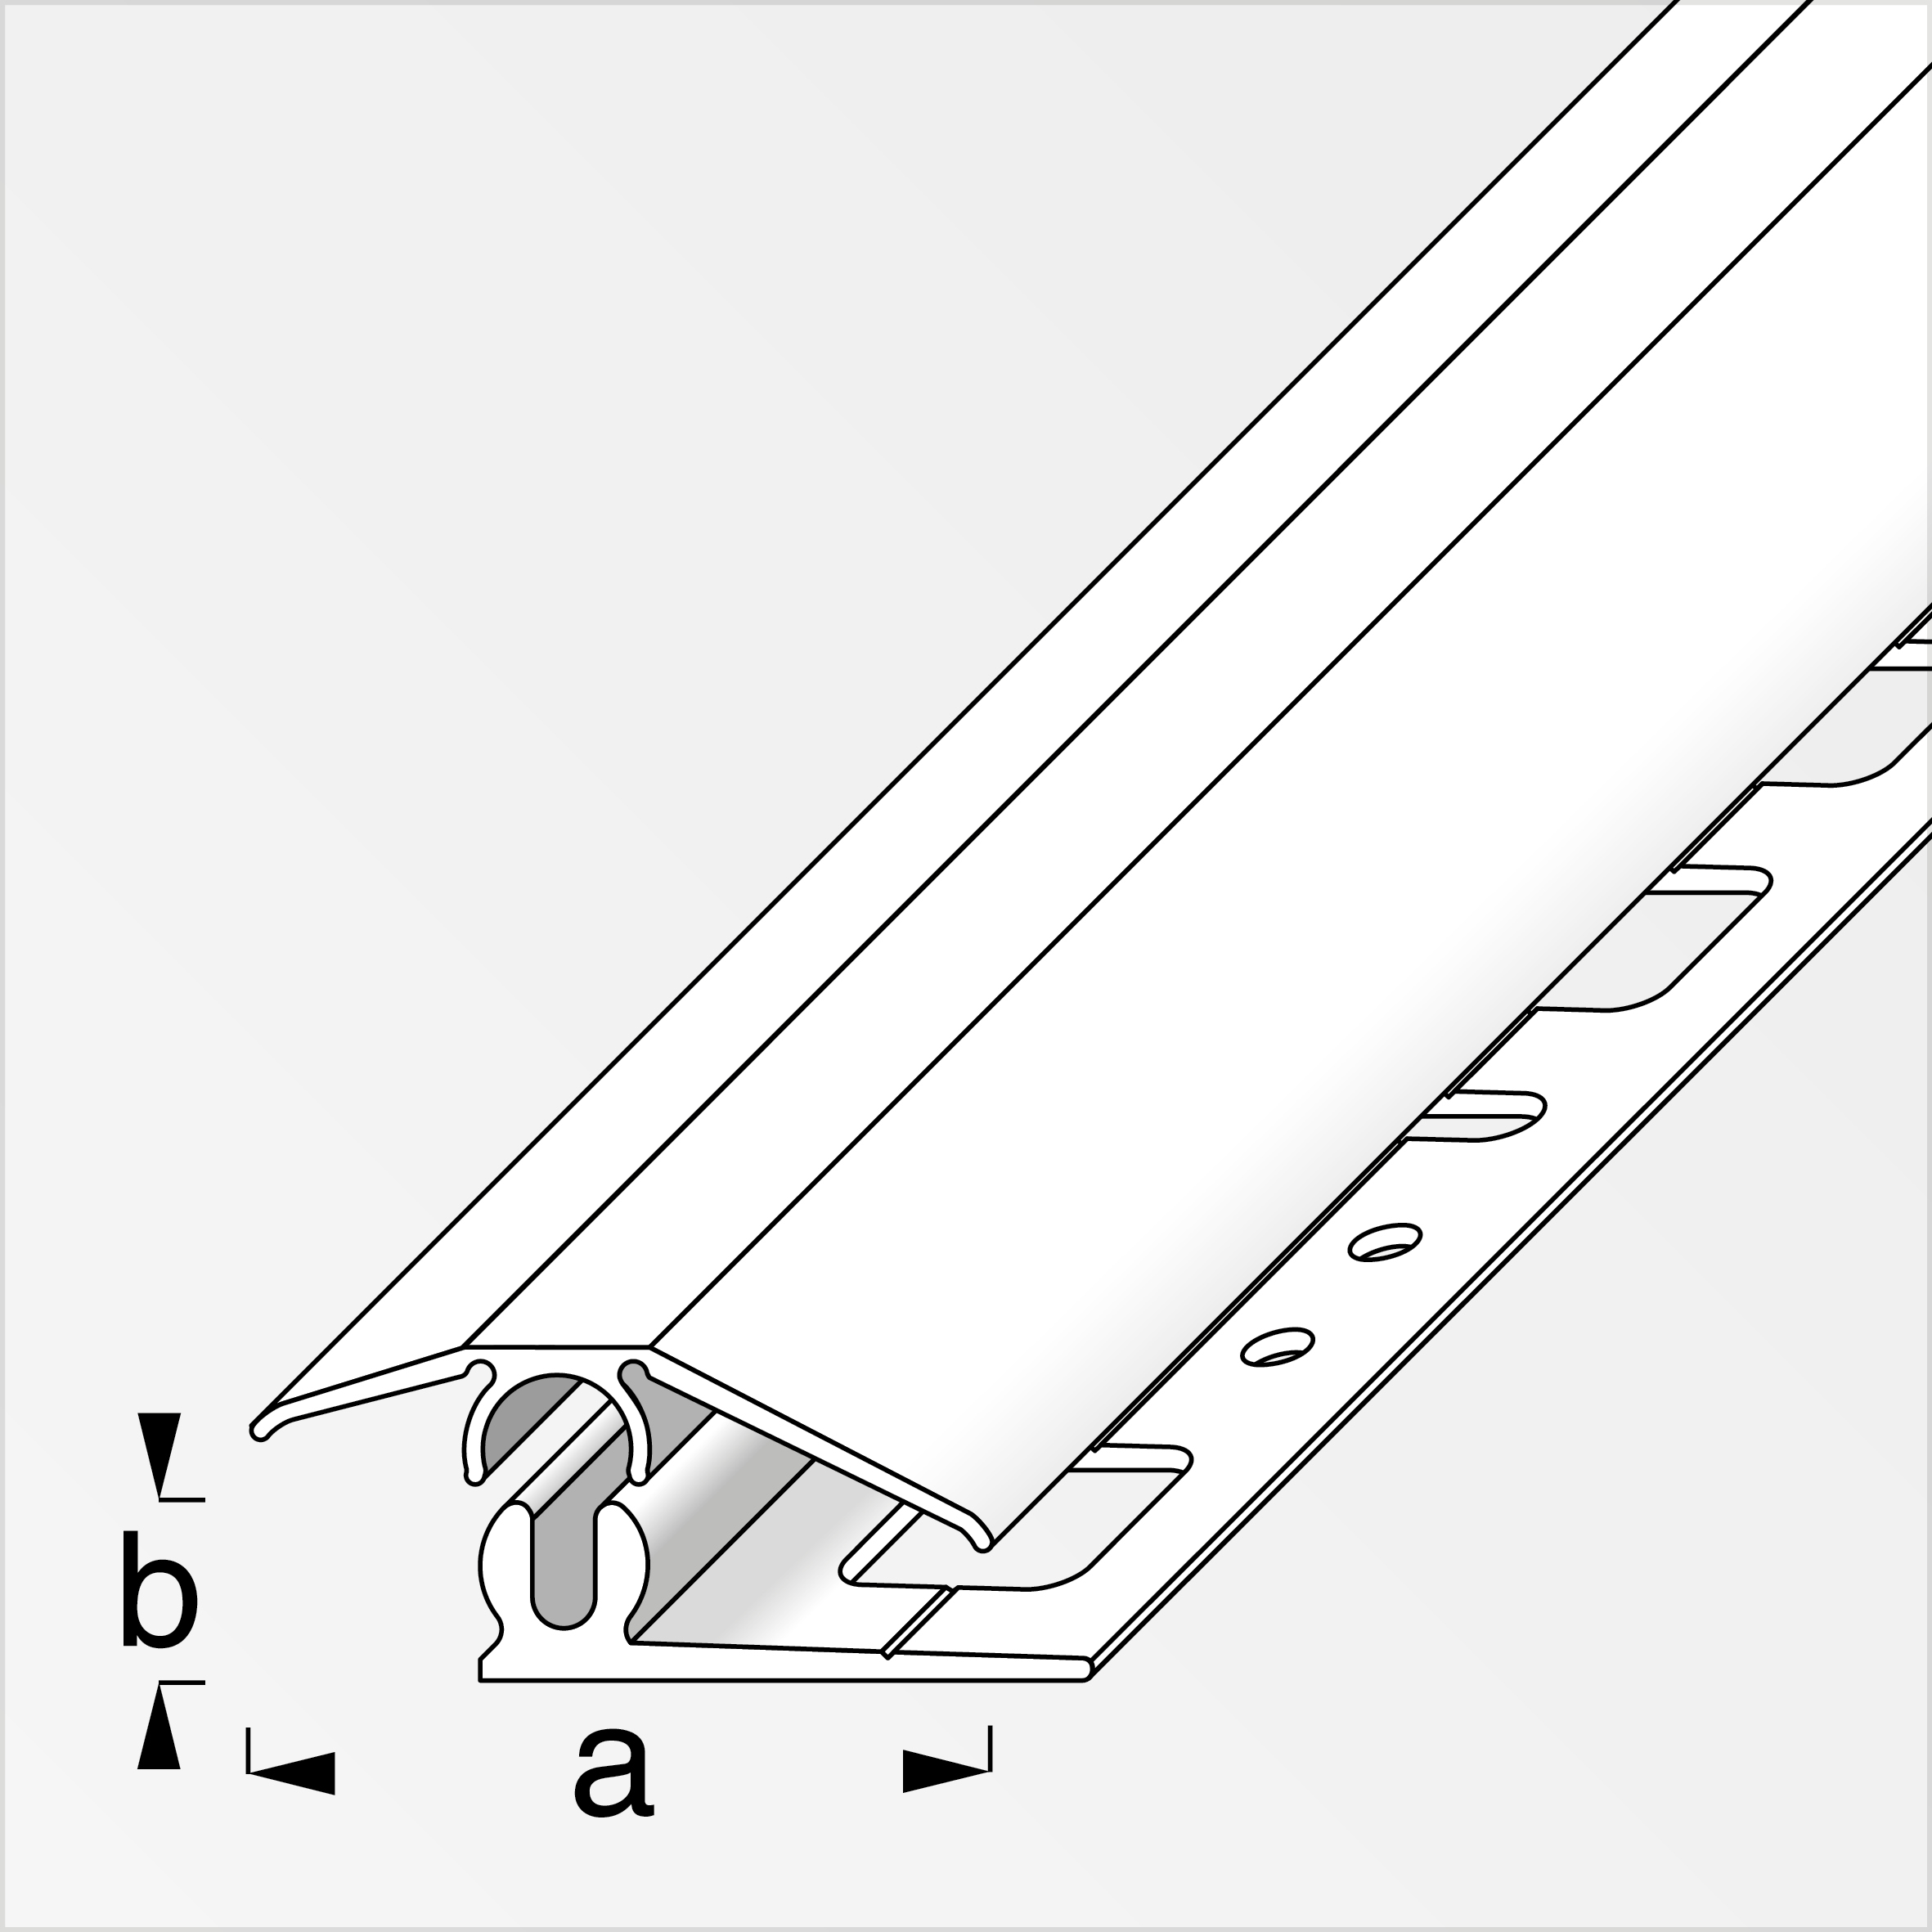 clipstech® Niveauausgleichsprofil Komplett-Set Alu eloxiert, Messing 2 m, 31 × 7 mm